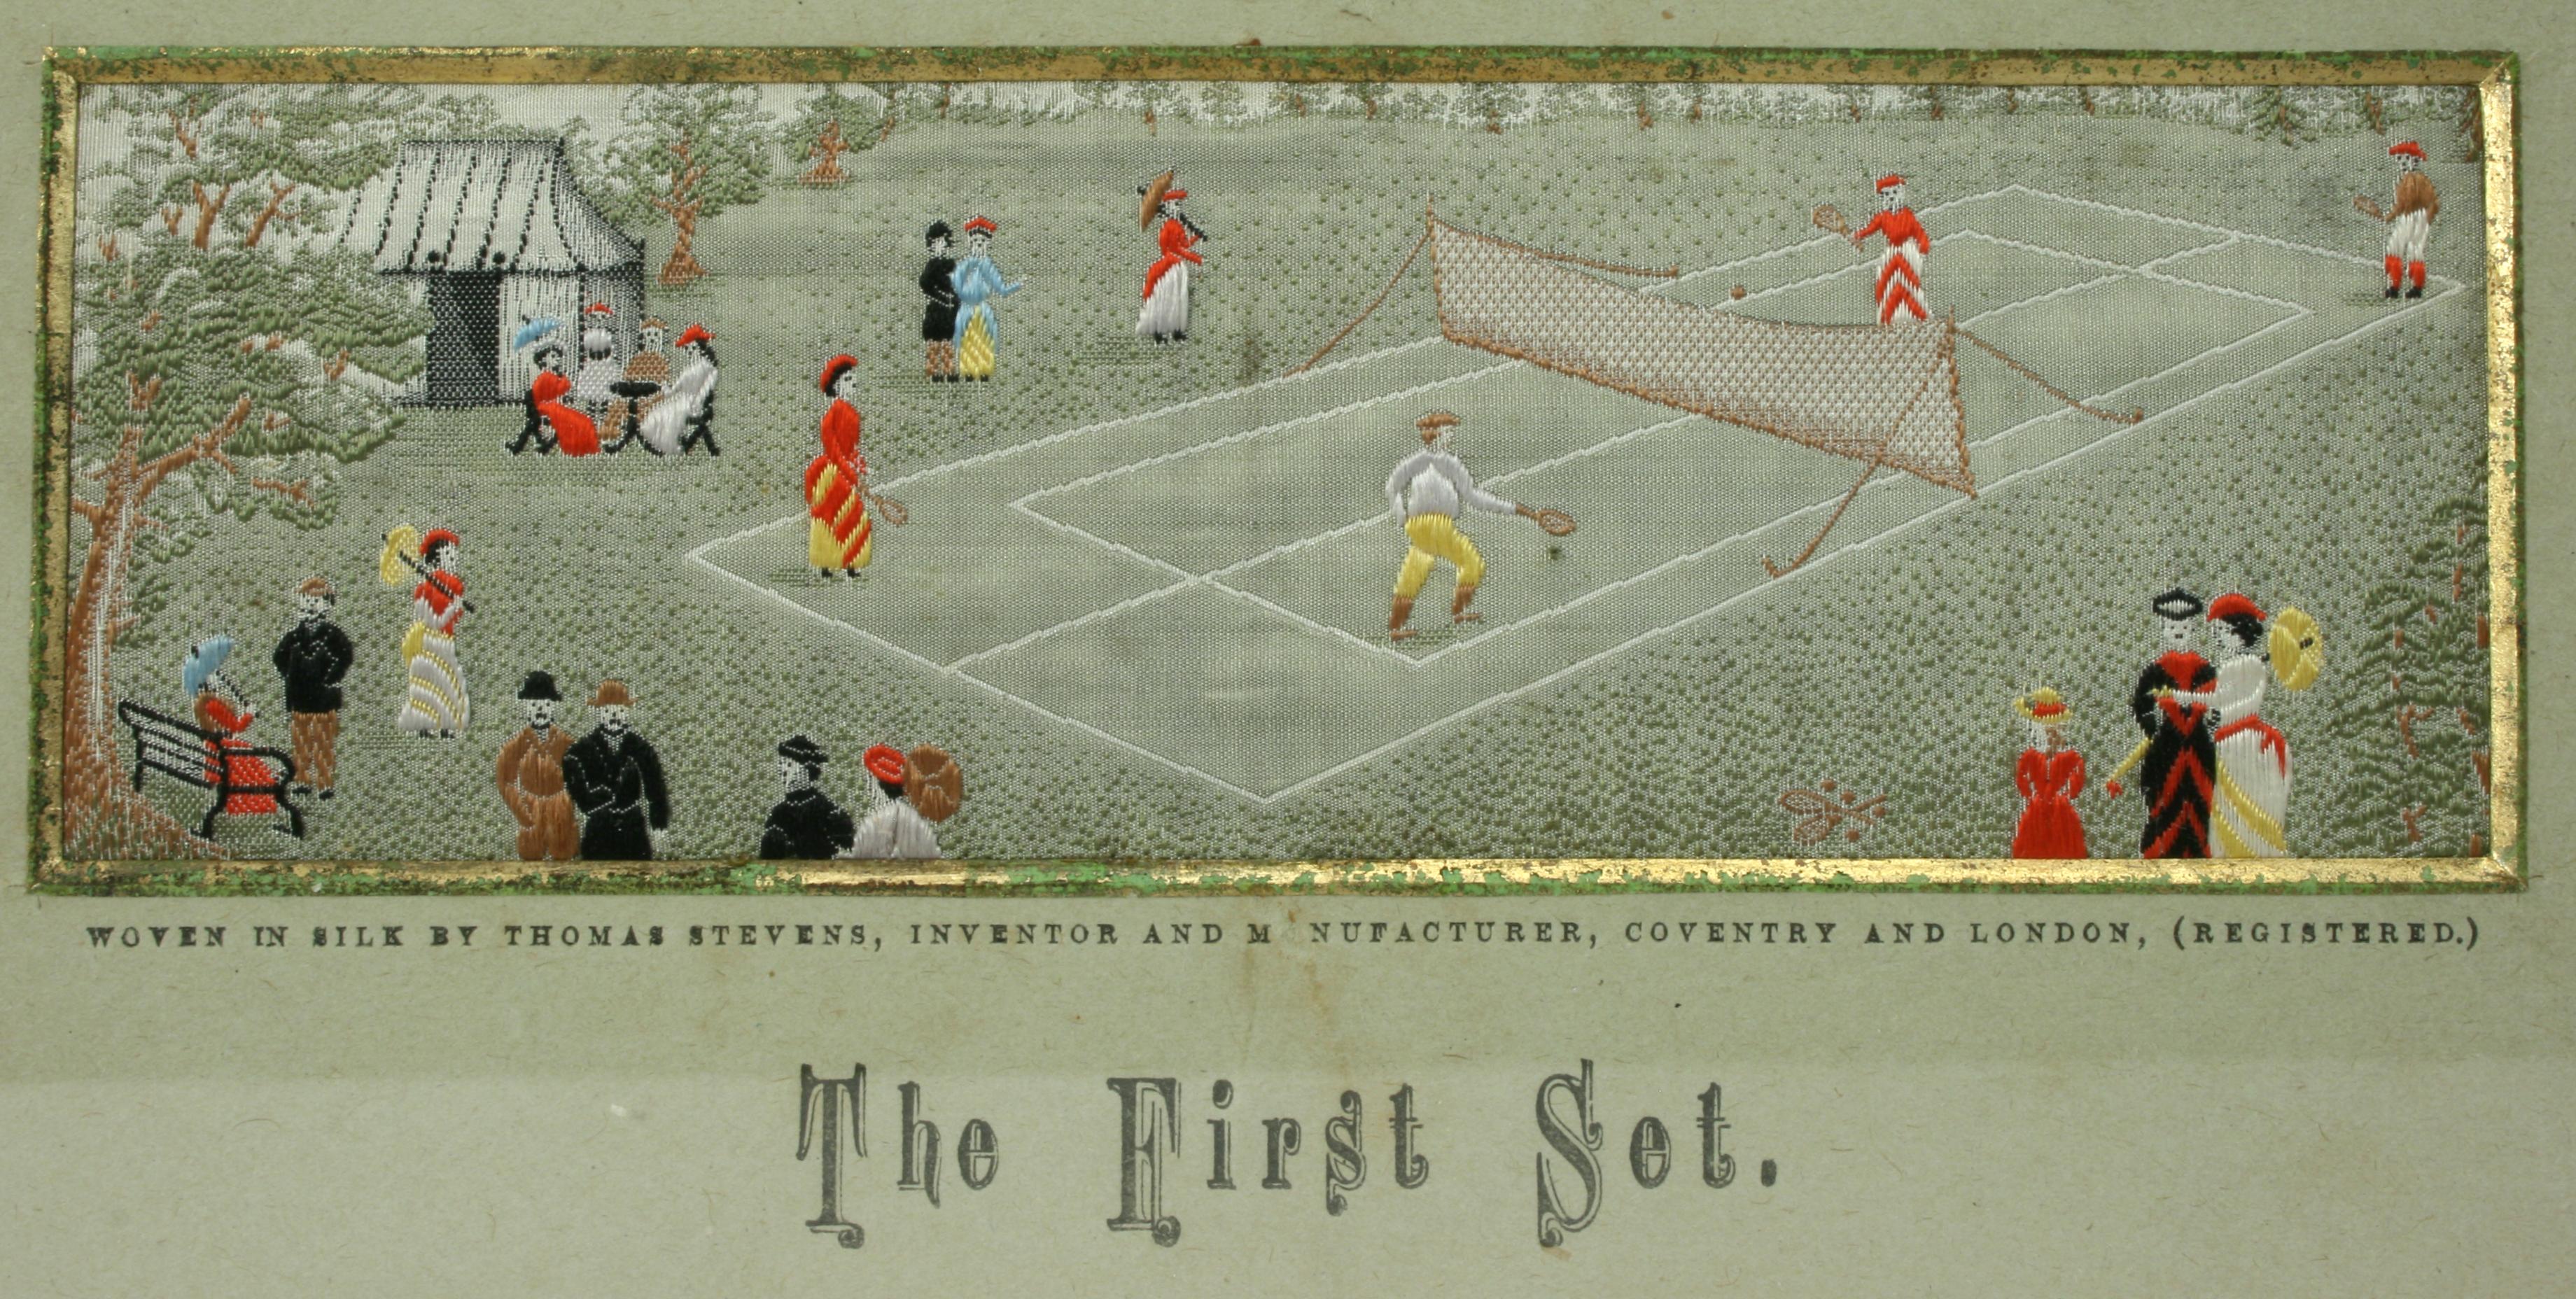 Sporting Art Stevengraph, a Tennis Match, the First Set